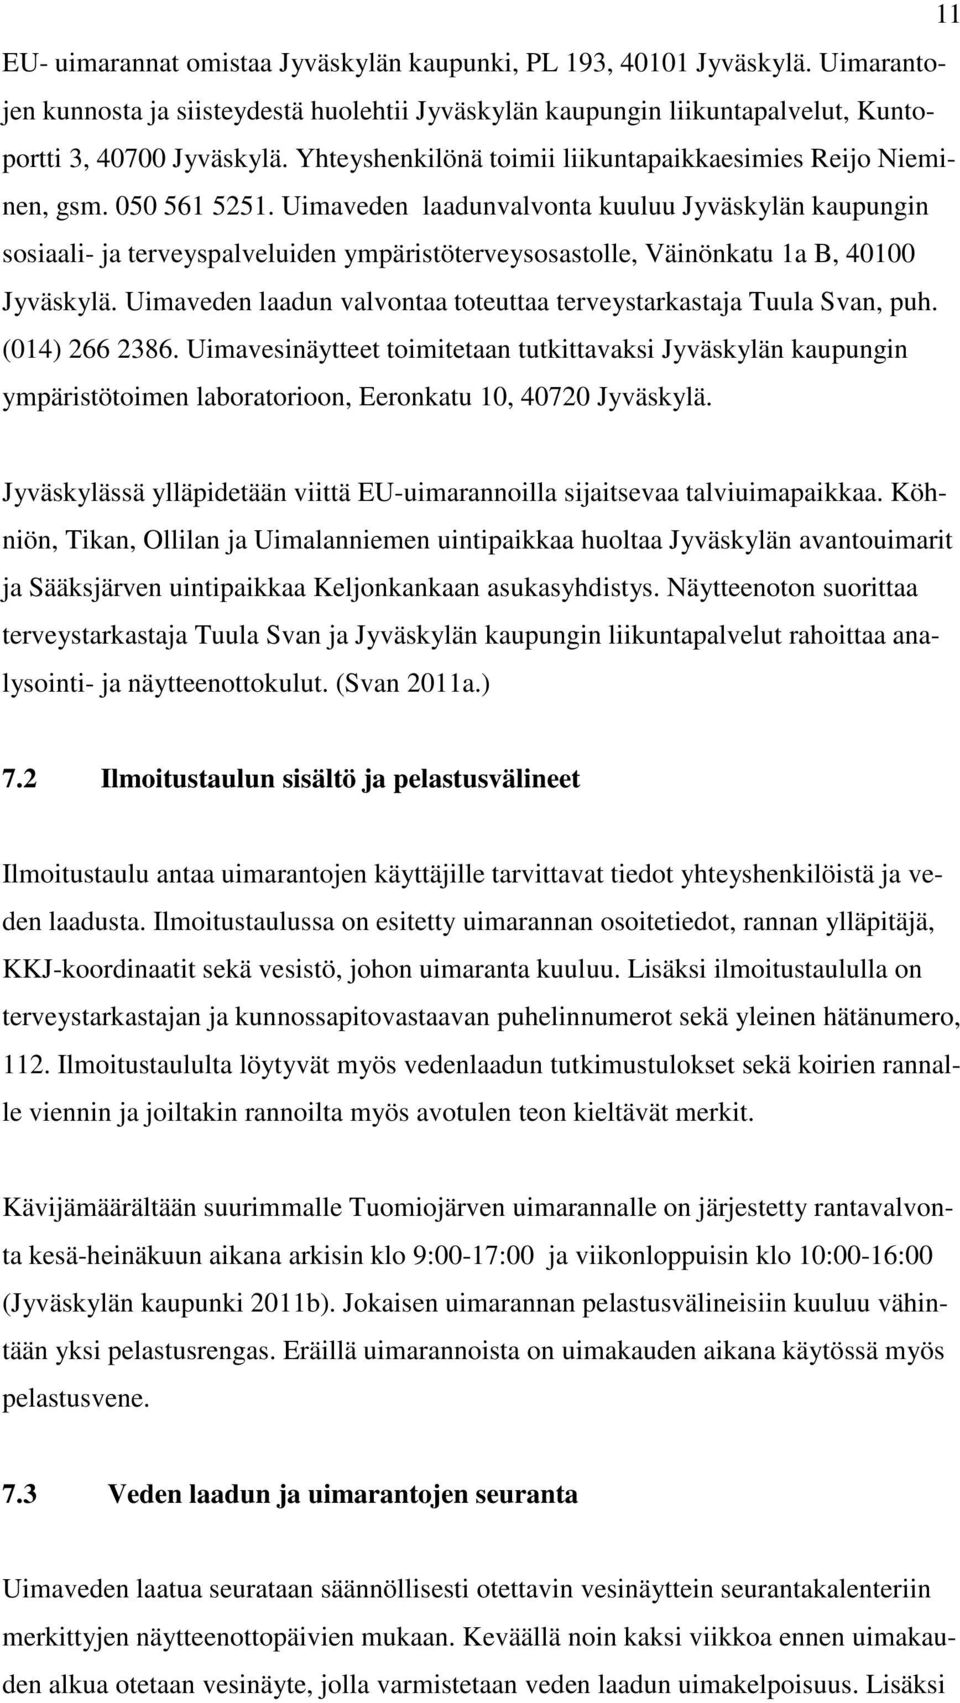 Uimaveden laadunvalvonta kuuluu Jyväskylän kaupungin sosiaali- ja terveyspalveluiden ympäristöterveysosastolle, Väinönkatu 1a B, 40100 Jyväskylä.